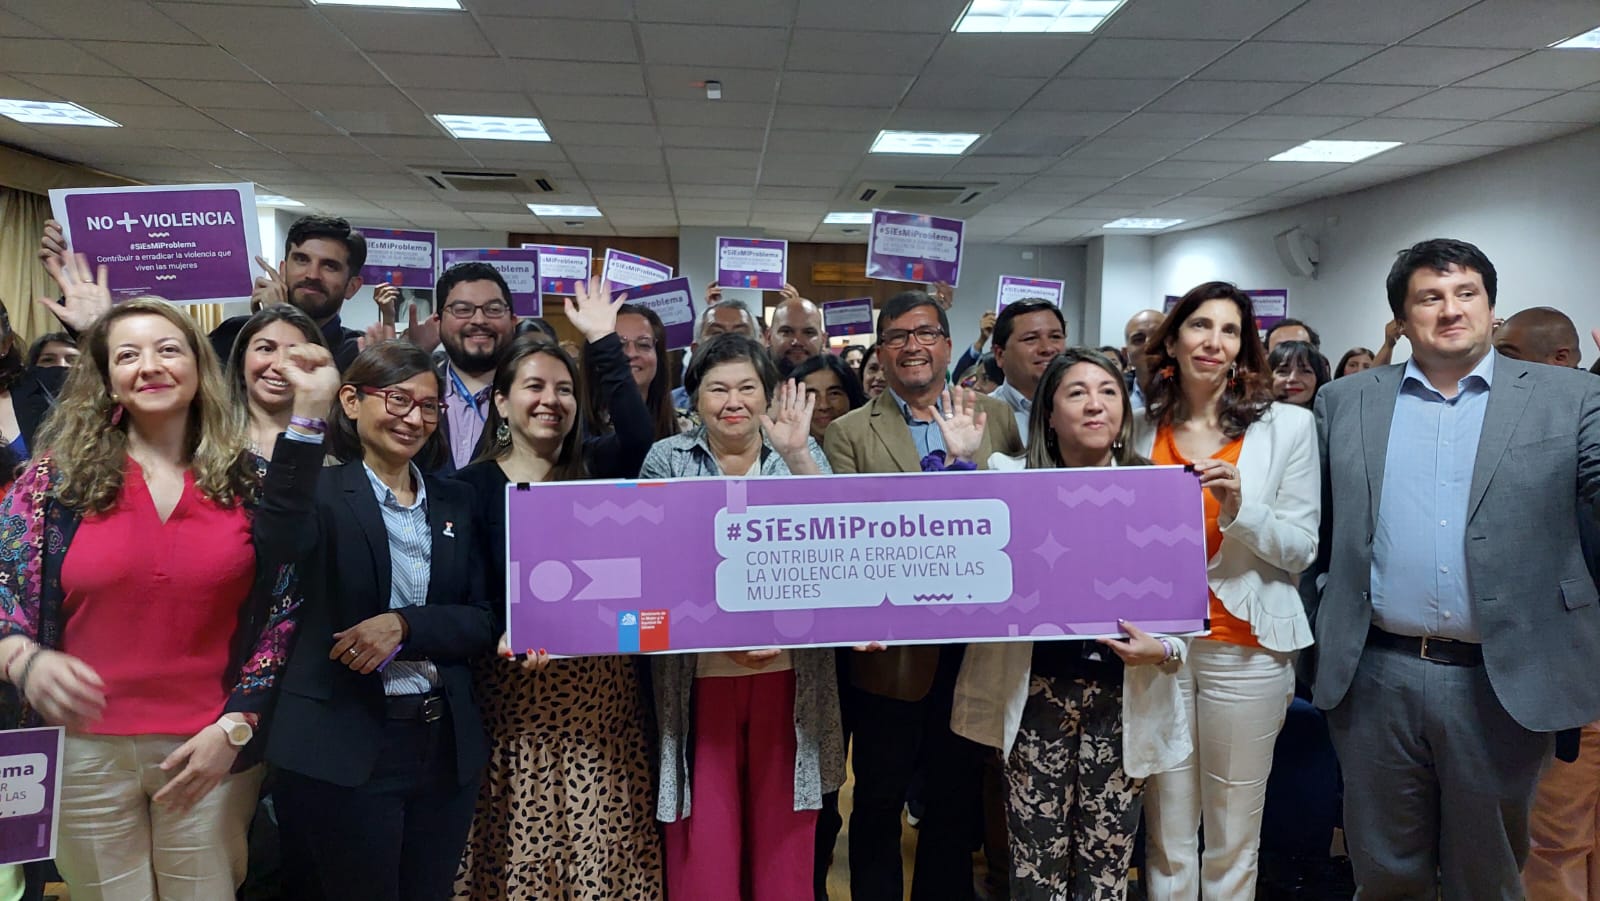 <strong>Gobierno lanza campaña “sí es mi problema” que aborda la erradicación de las violencias contra las mujeres</strong>